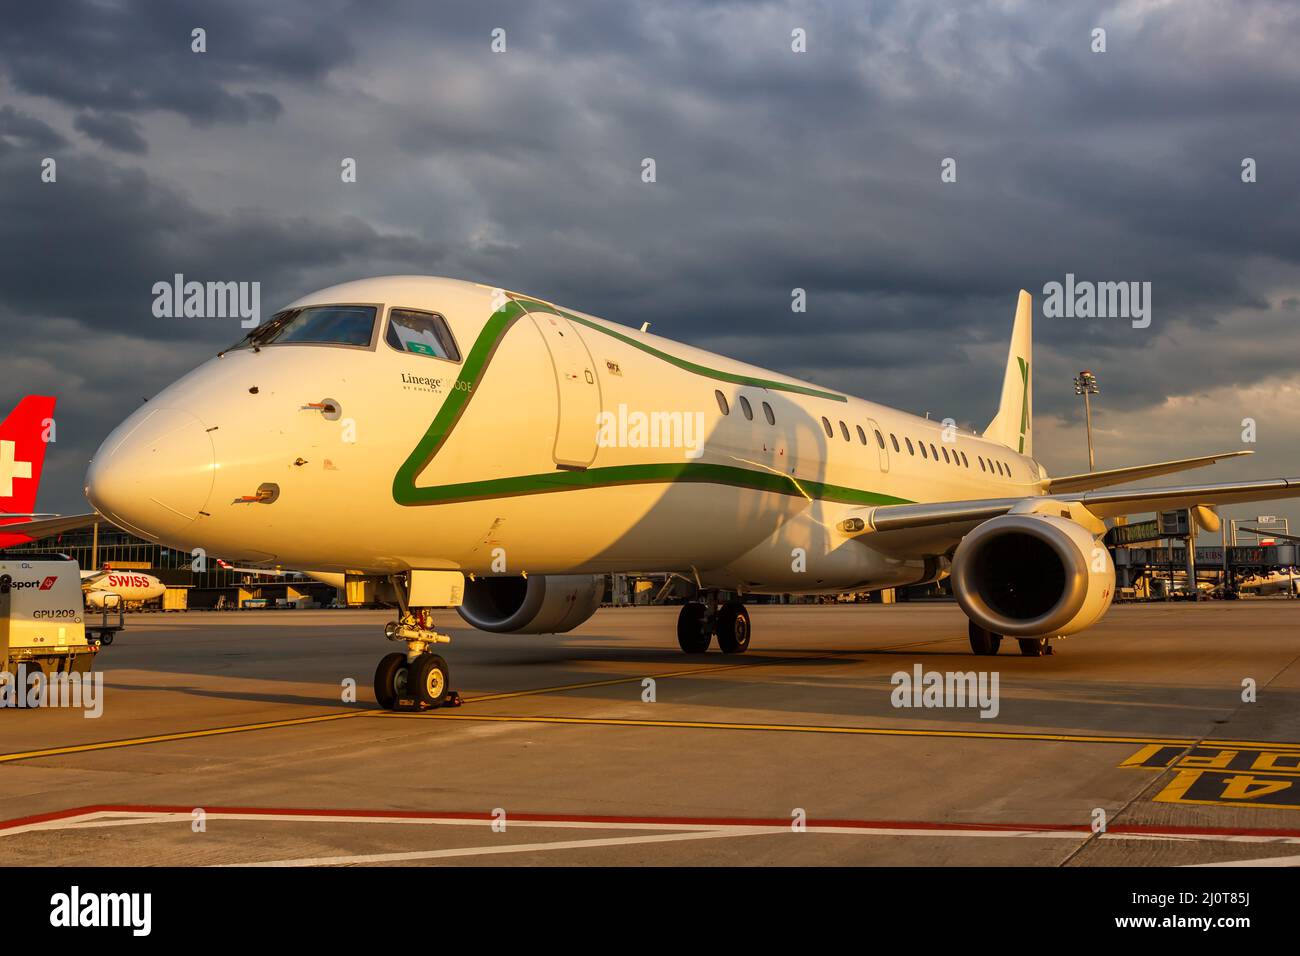 Airx Charter Embraer Lineage 1000 Aircraft aéroport de Zurich en Suisse Banque D'Images